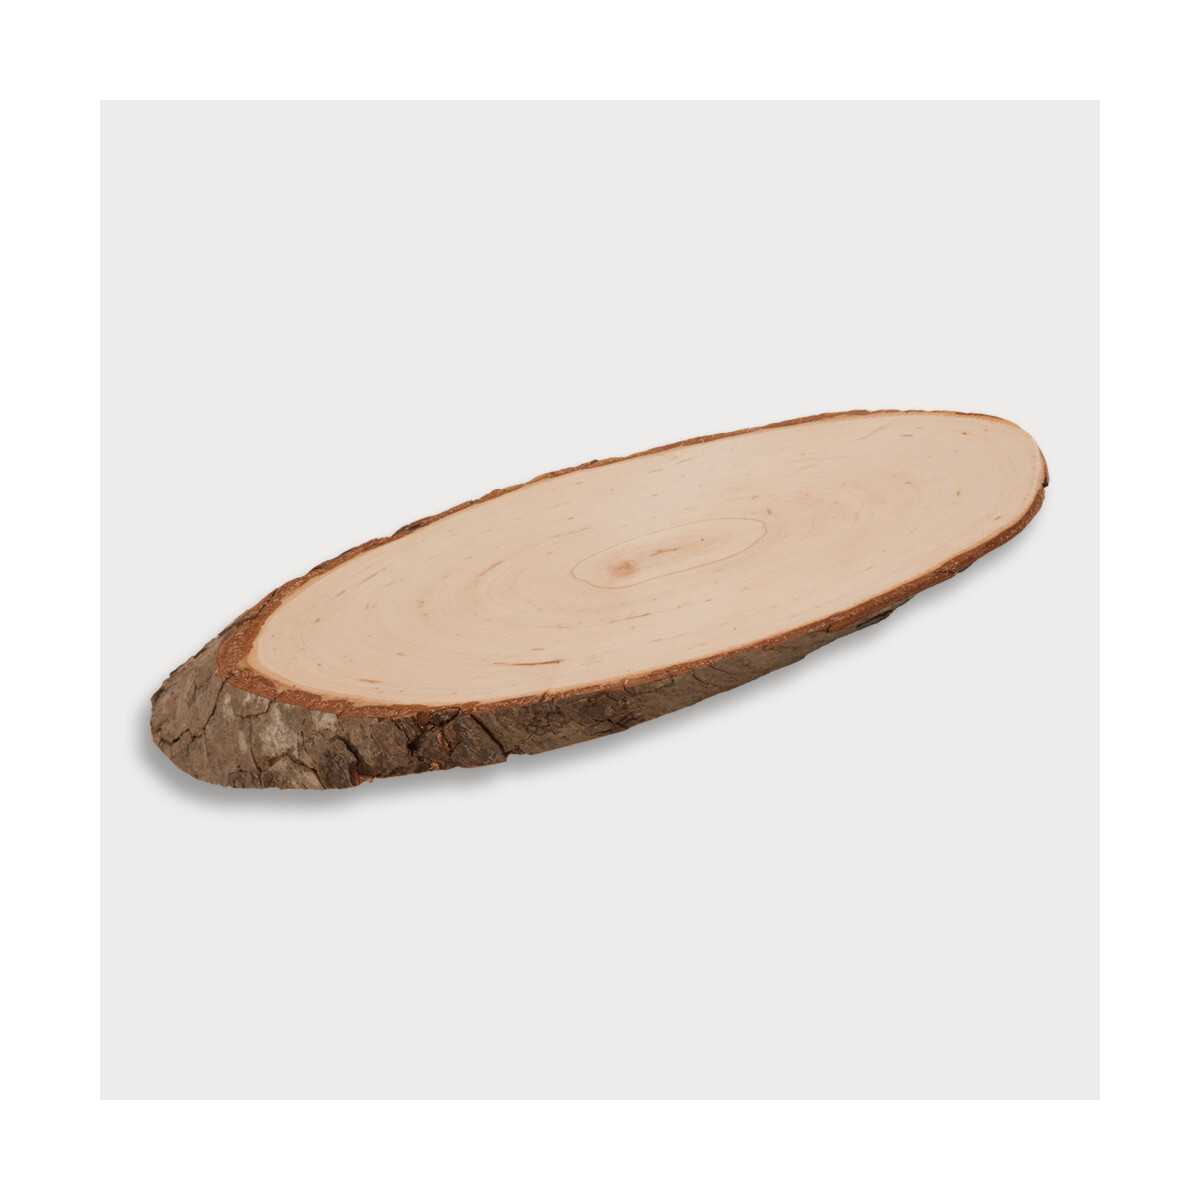 Holzscheiben mit Rinde, oval, unlackiert aus Holz 22,5 cm